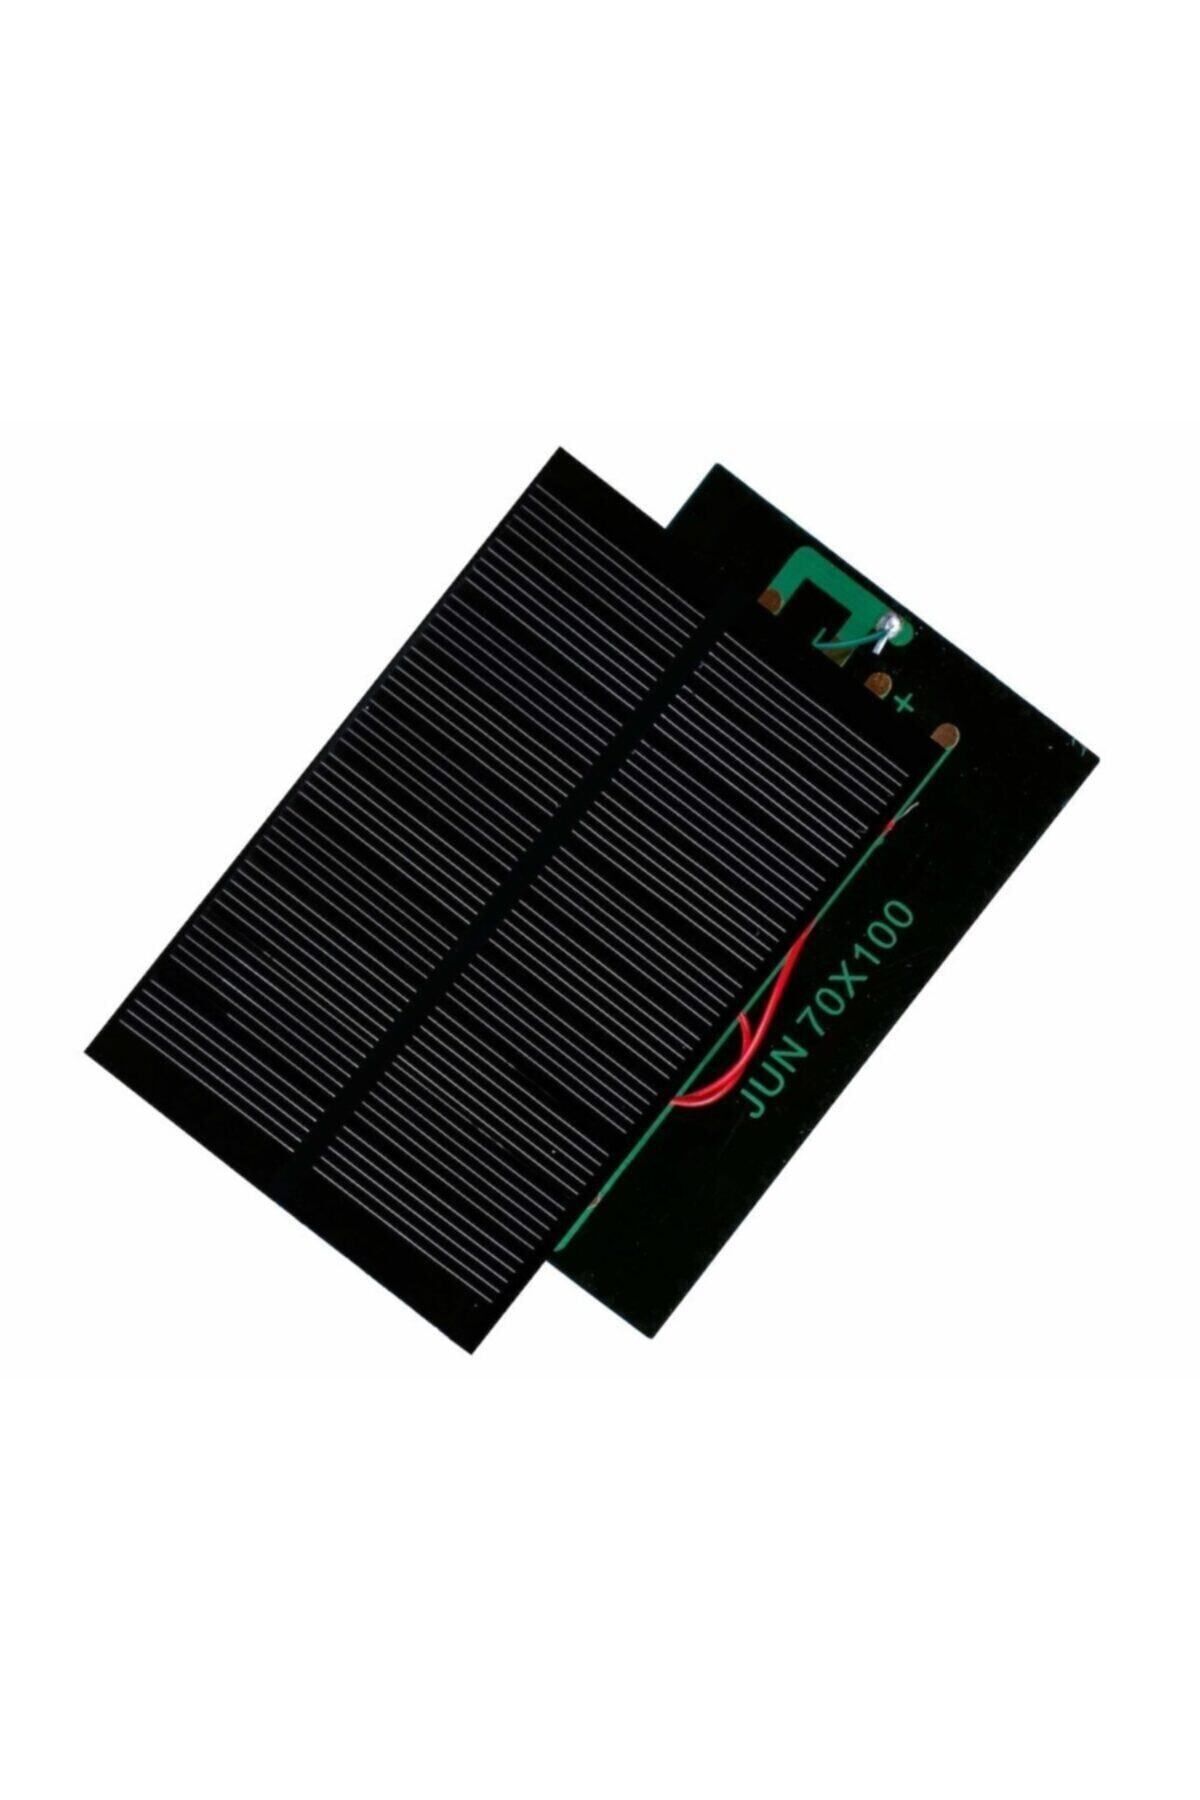 EmAyCenter Küçük Mini Güneş Paneli 7cmx10cm 6 Volt Uç Kablolu